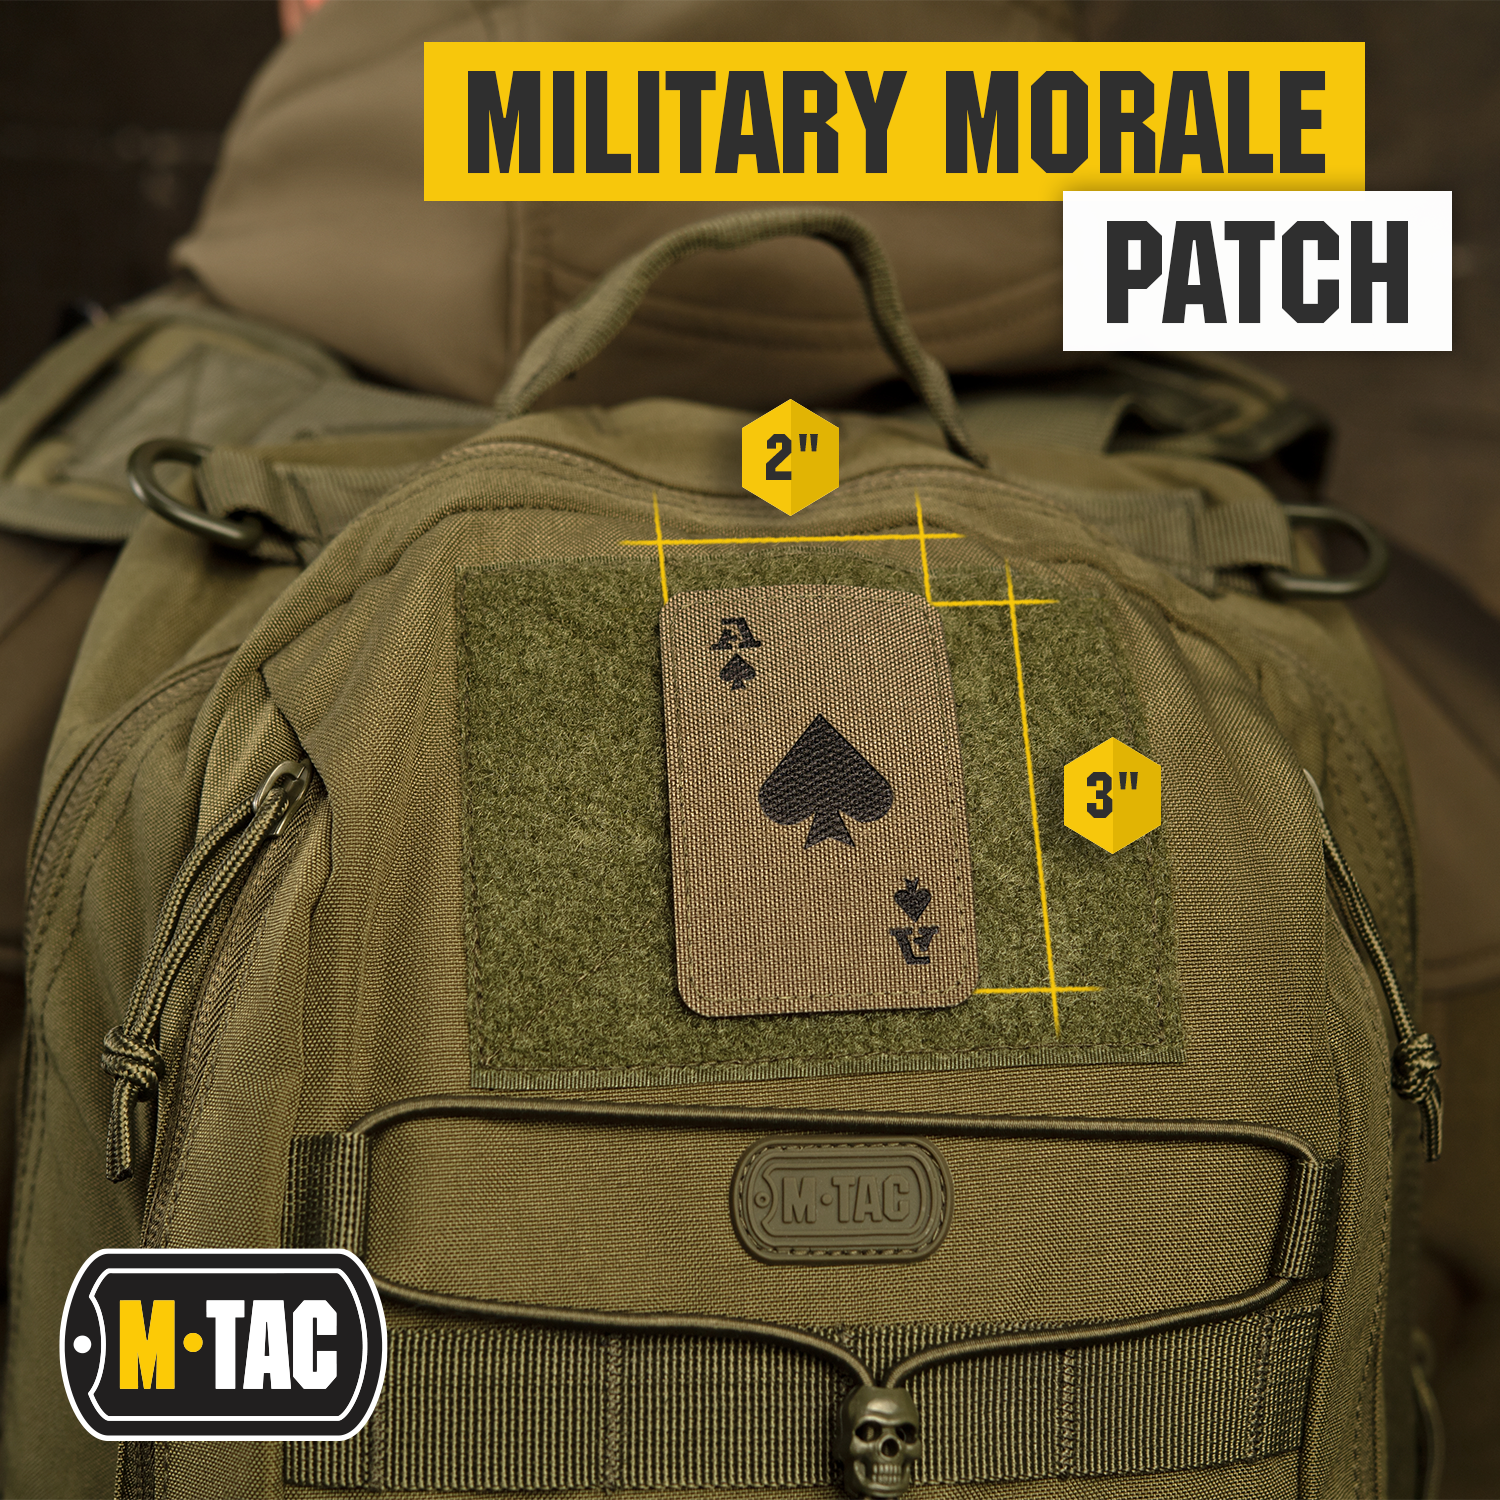 M-Tac patch Ace of Spades Laser Cut - (Set of 2)